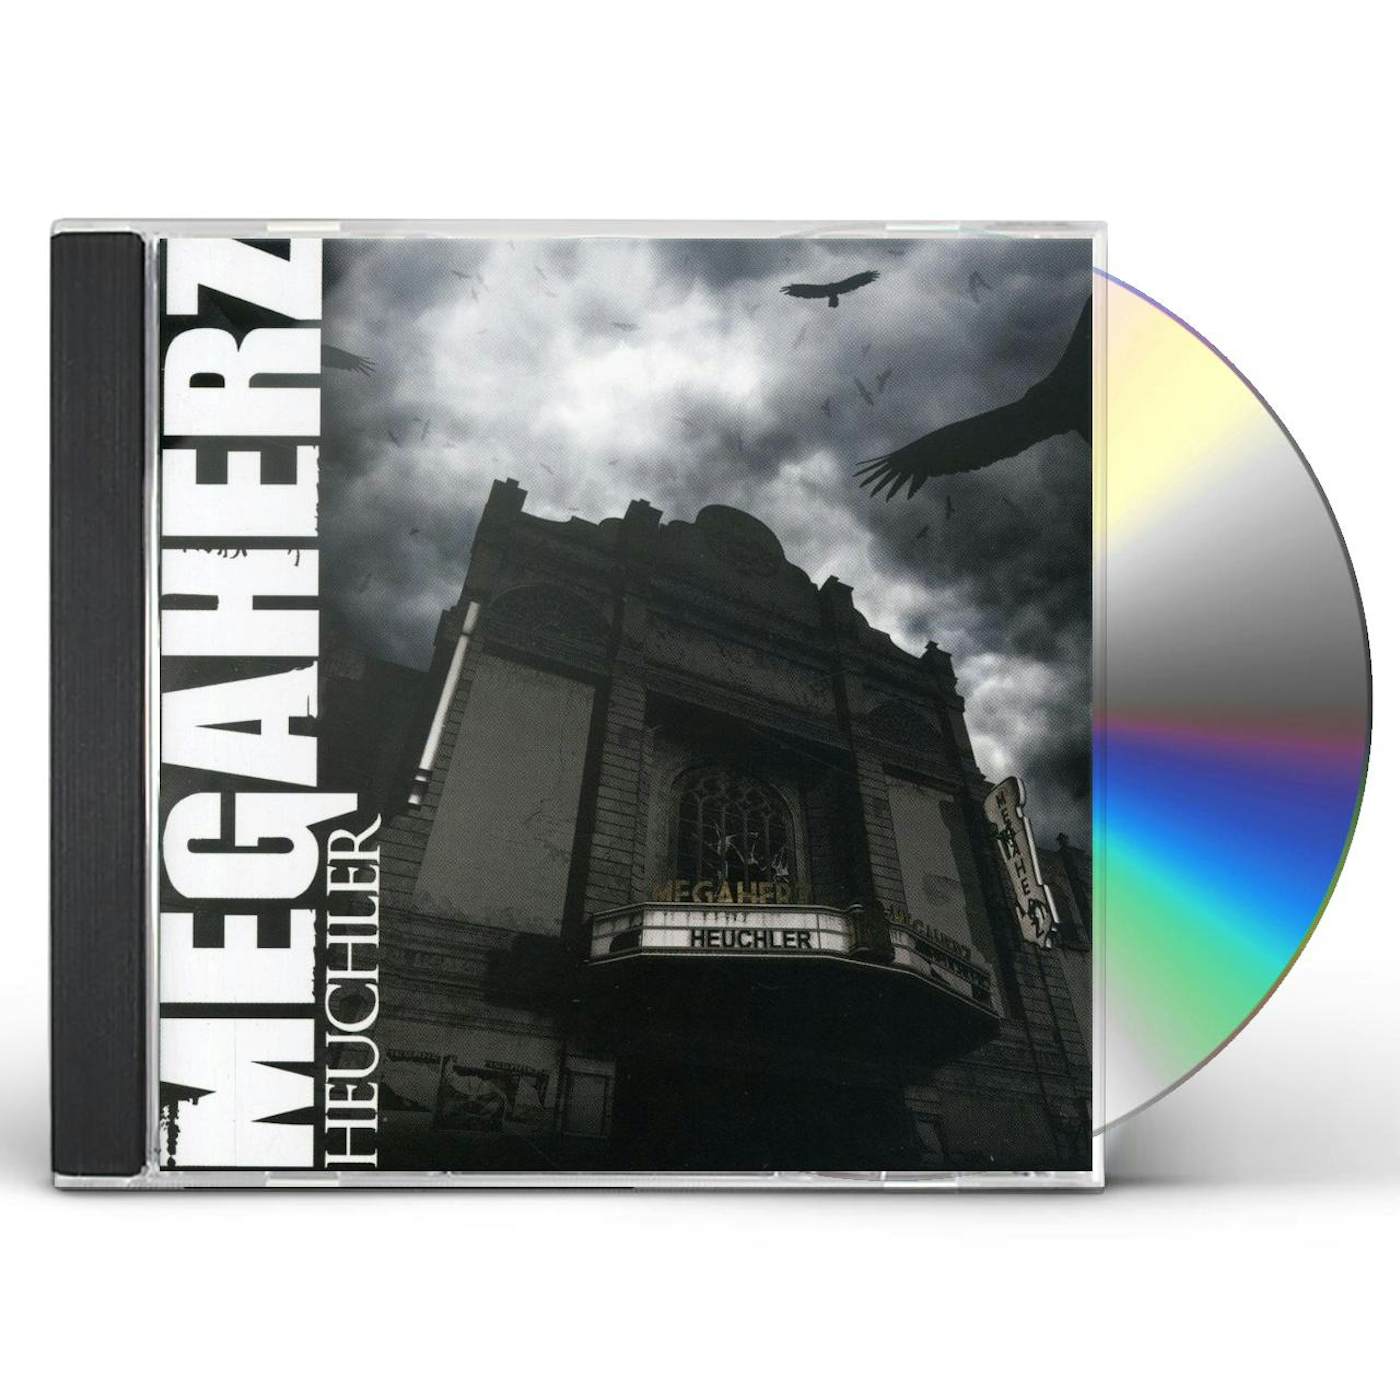 Megaherz HEUCHLER CD